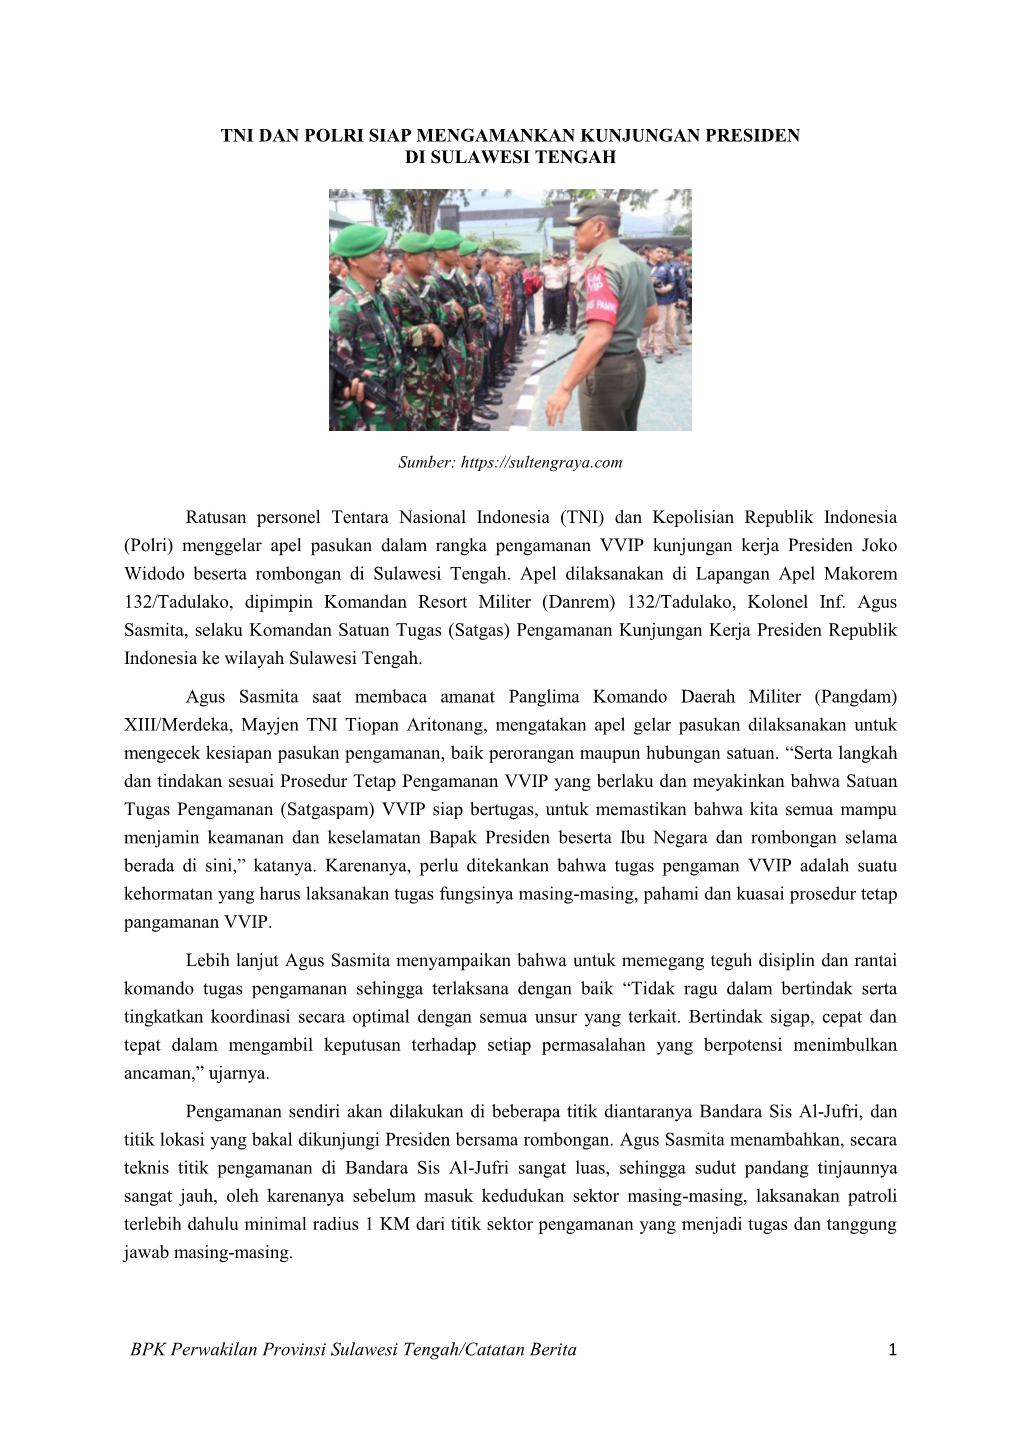 TNI Polri Siap Amankan Kunjungan Presiden Di Sulteng